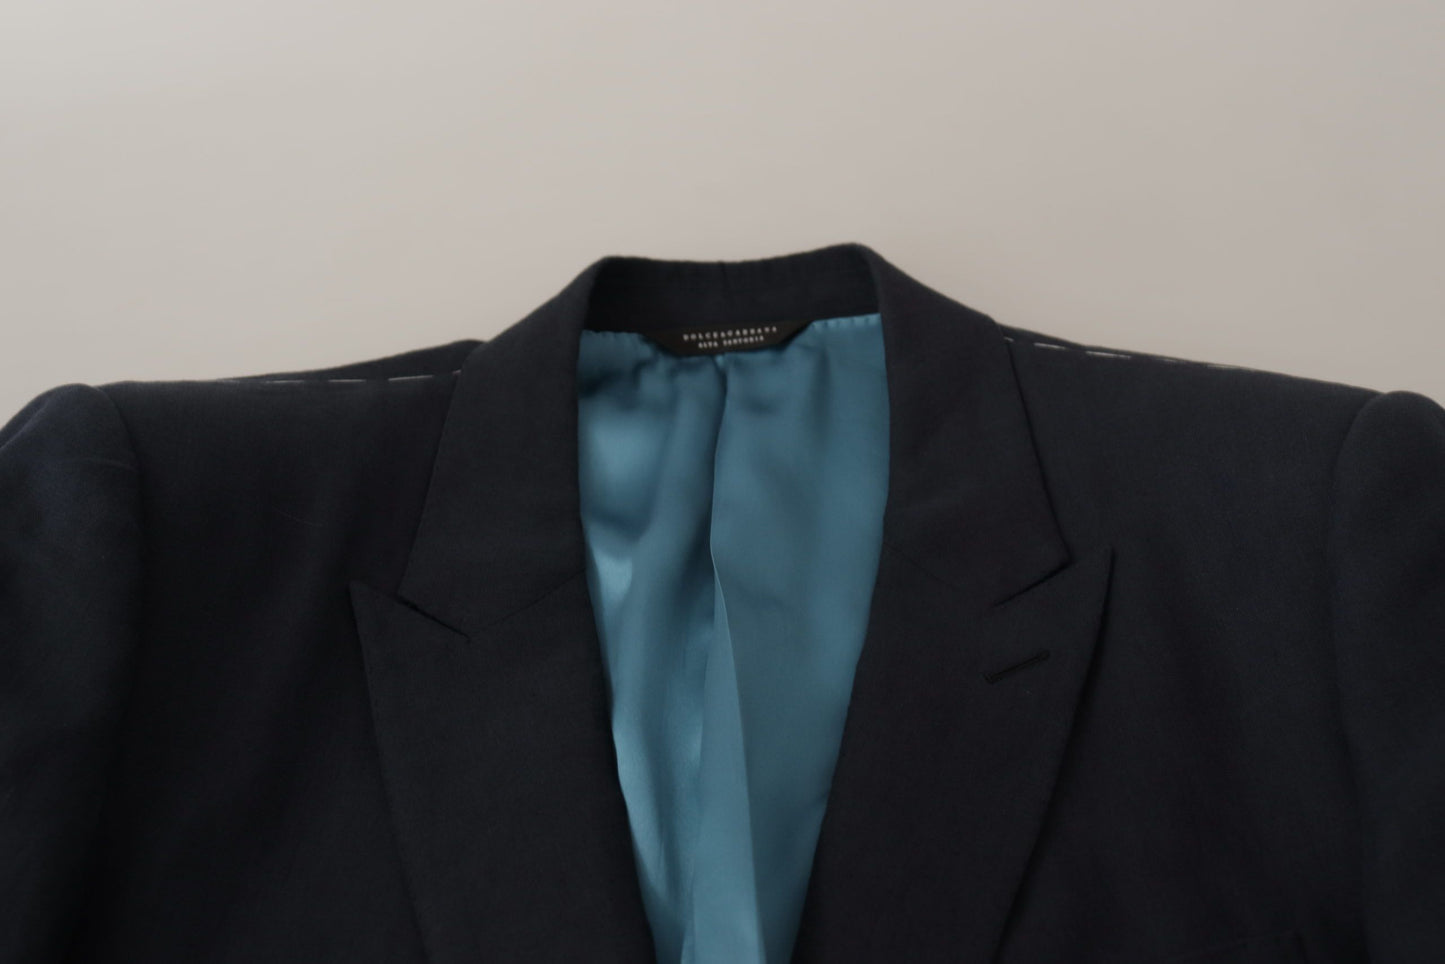 Dolce & Gabbana Dark Blue ALTA SARTORIA Jacket Coat Blazer